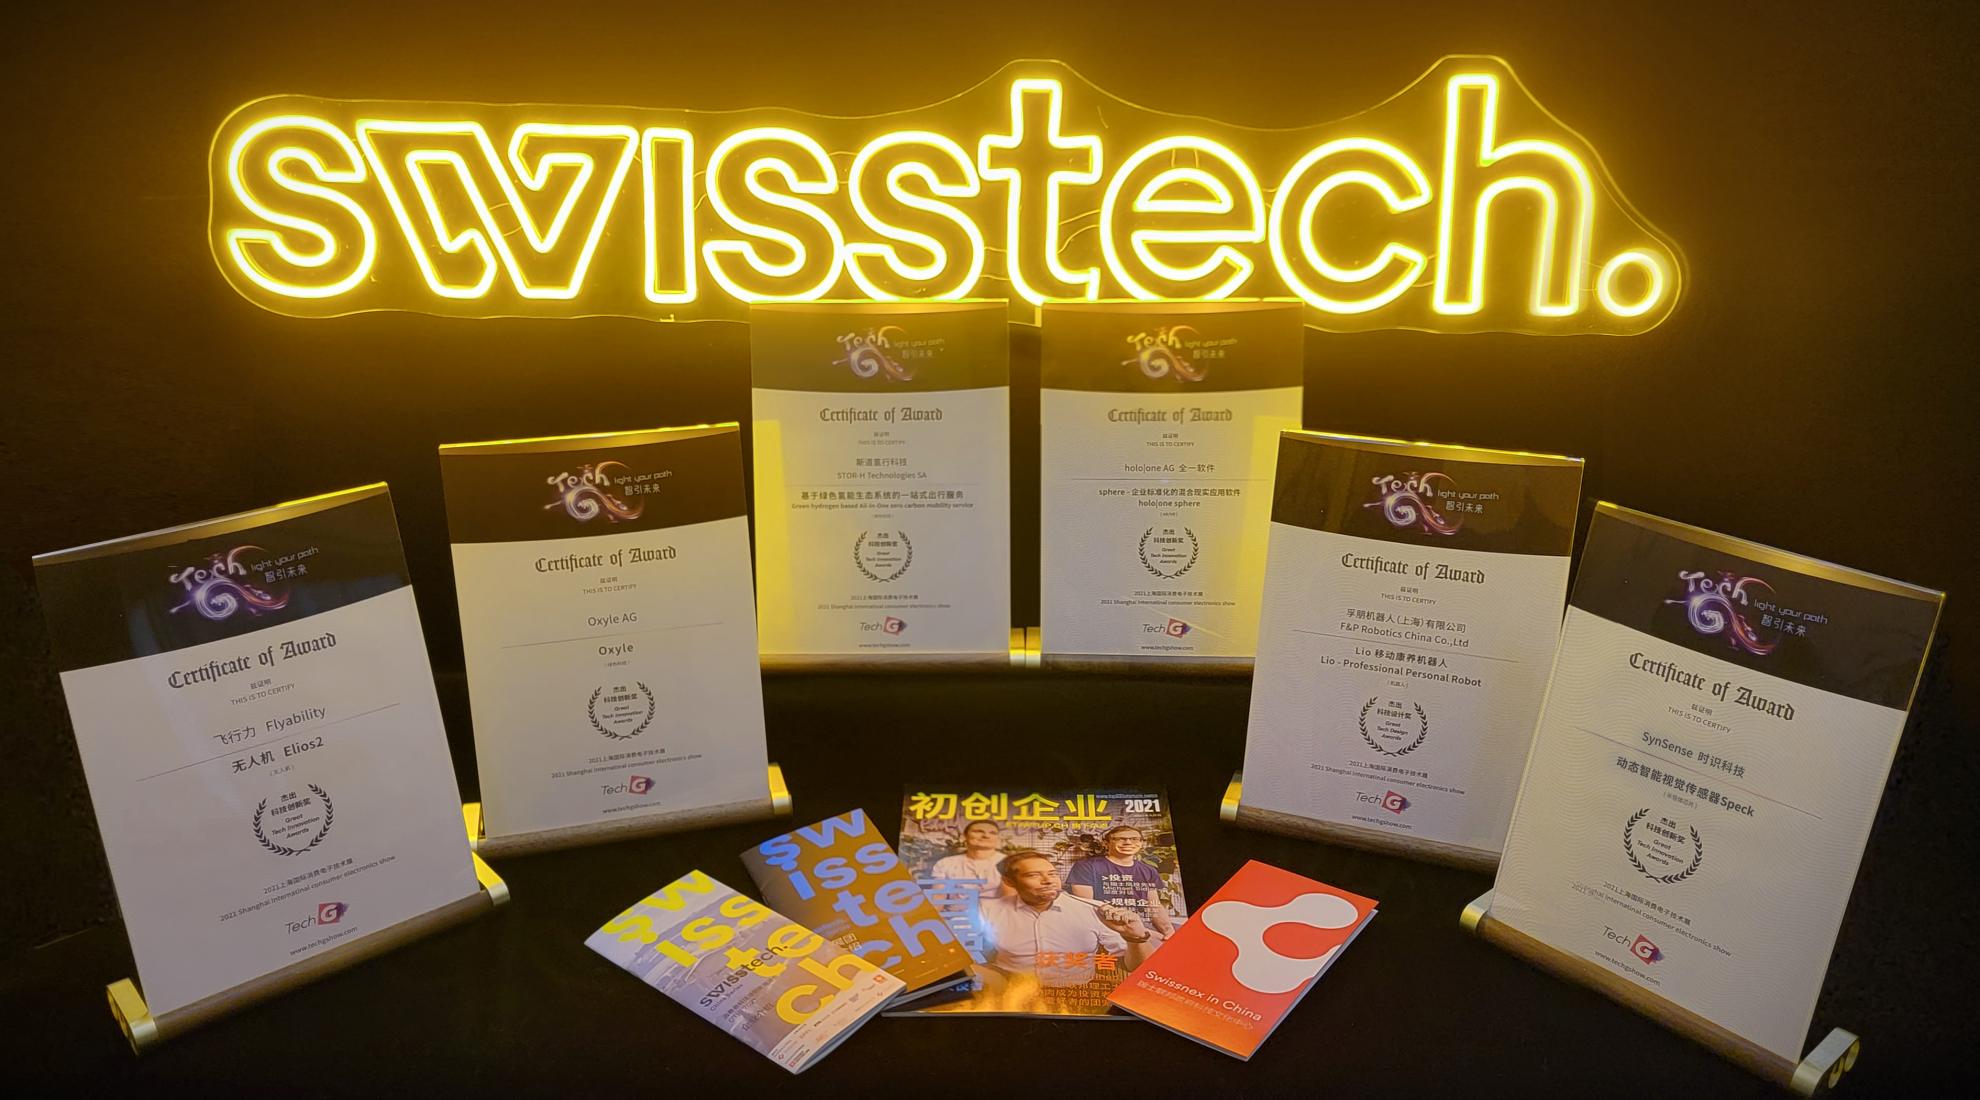 Six Swiss Deeptech Startups Awarded 